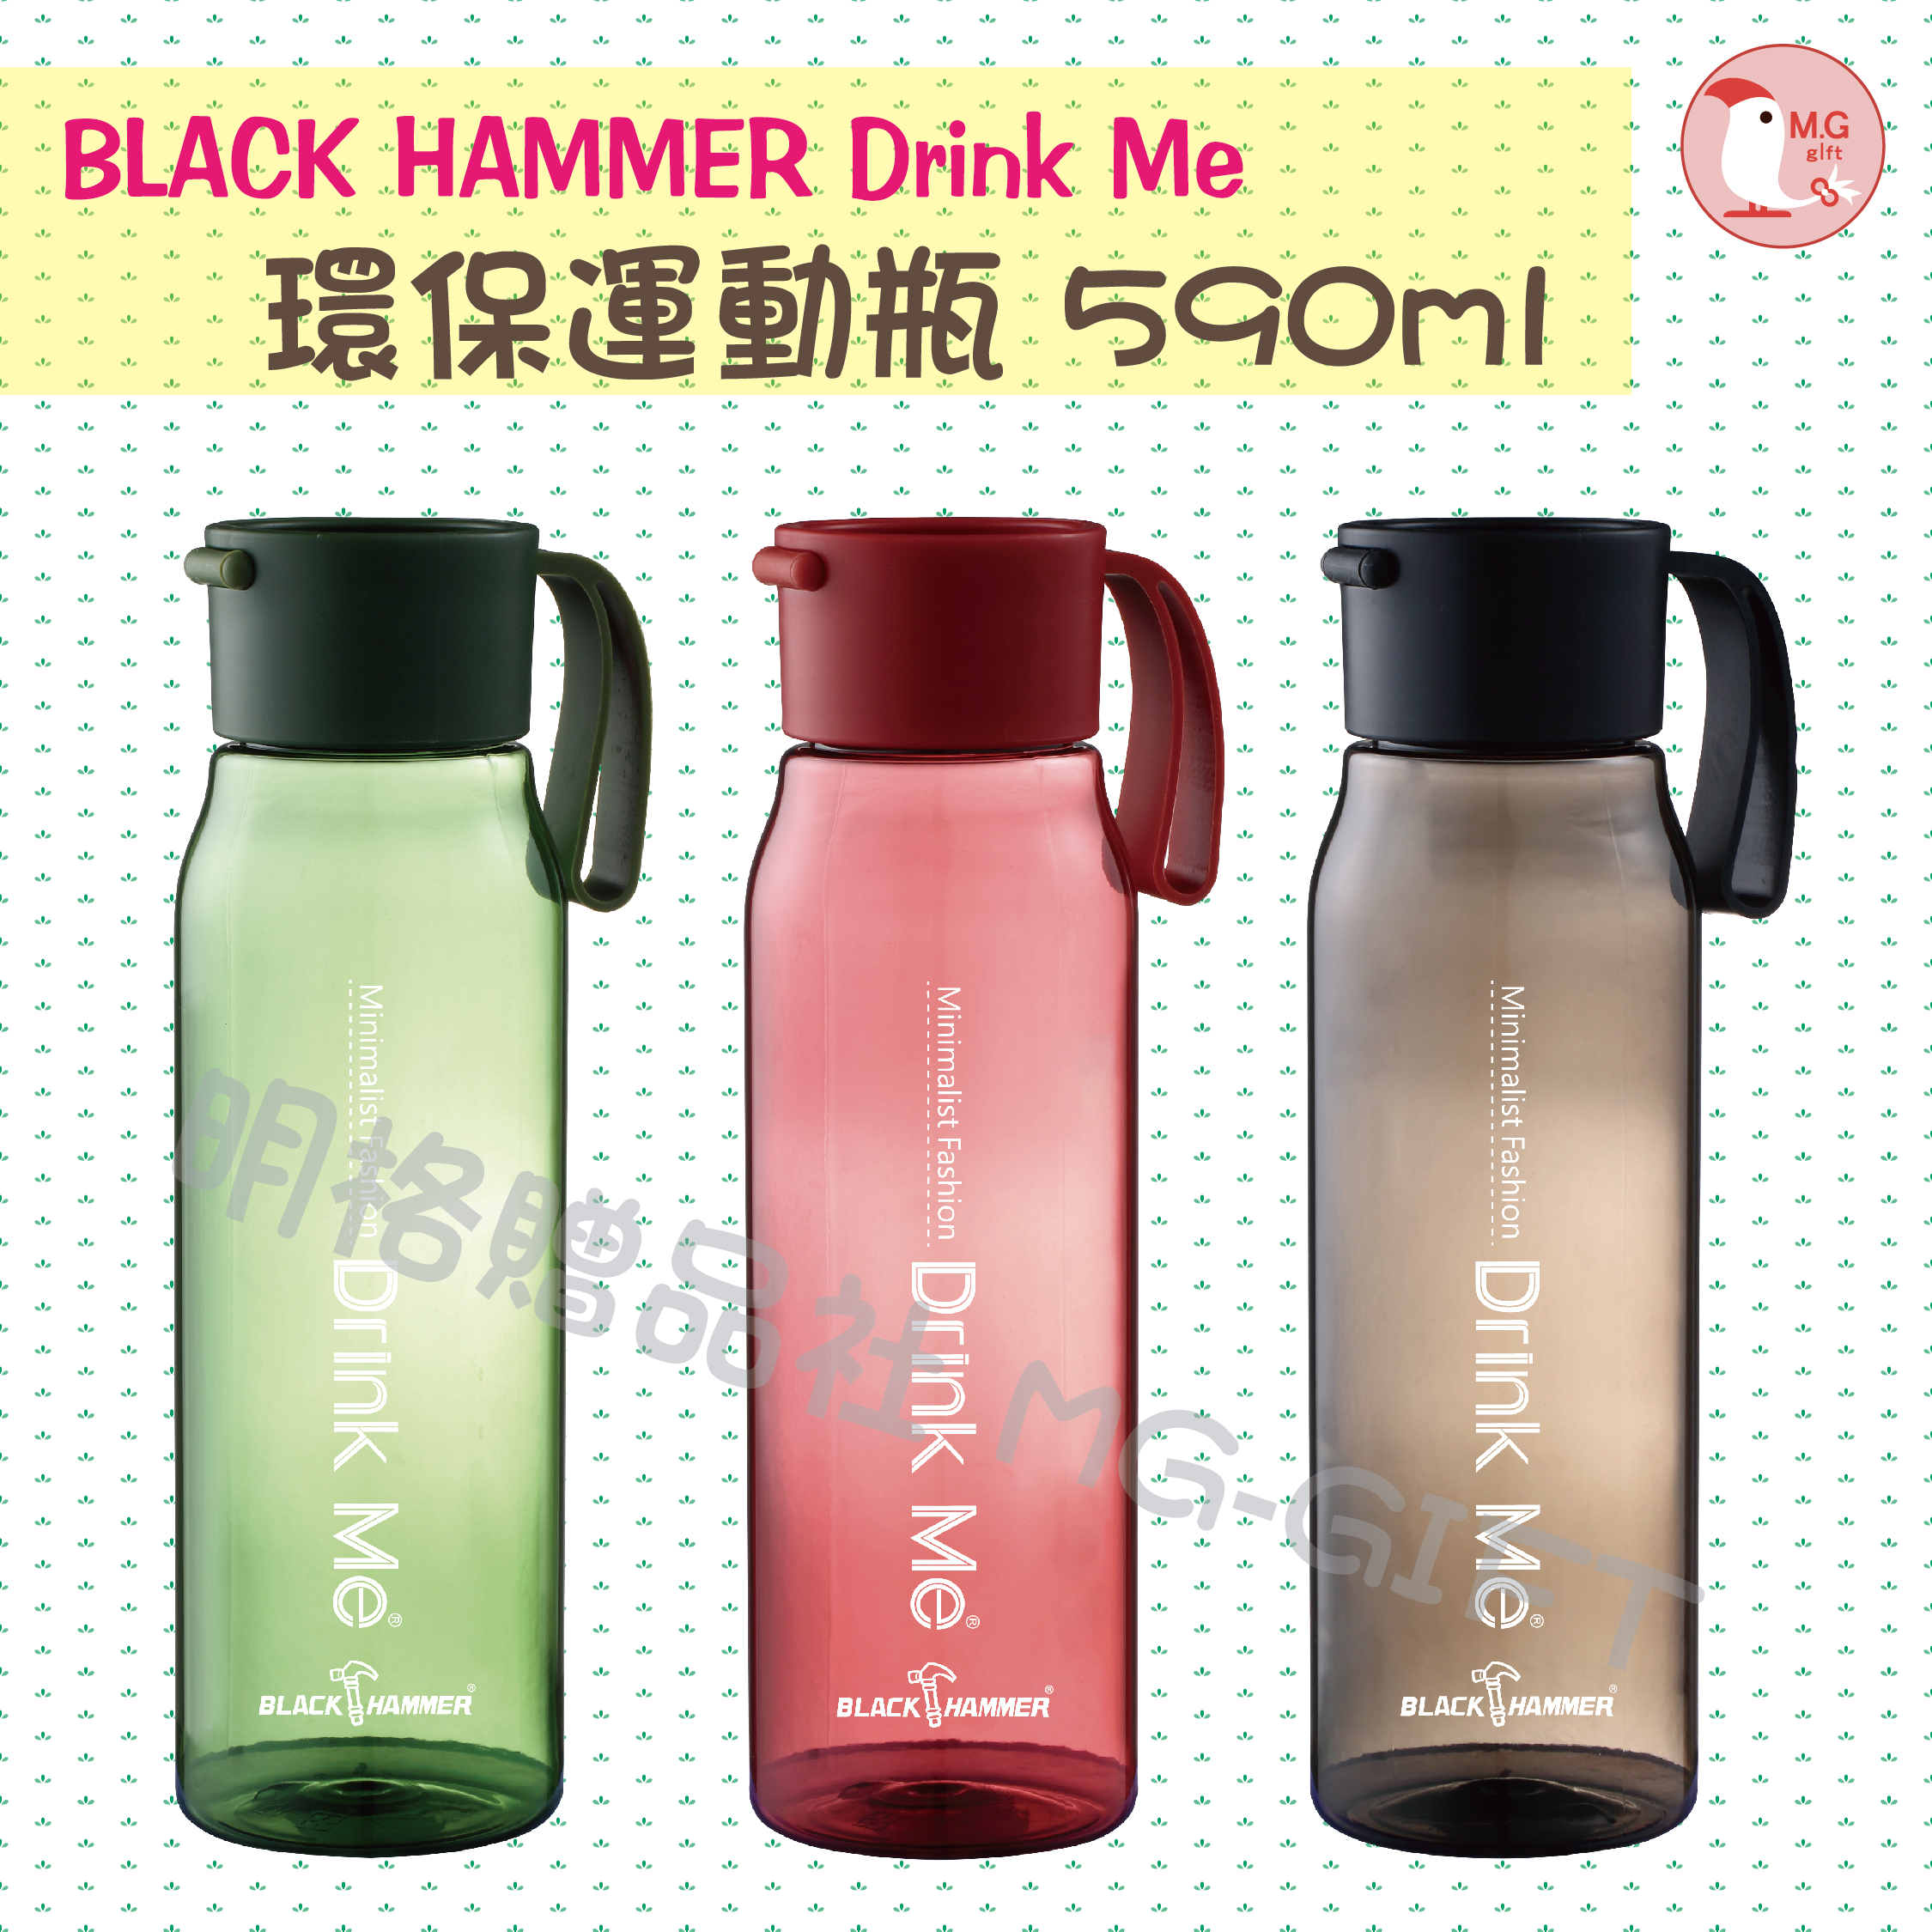 black hammer drink me 環保運動瓶 590 ml tritan 夏天必備 環保商品 健身 運動 戶外 義大利品牌 明格贈品社 禮品 贈品 員工禮品 太和工坊